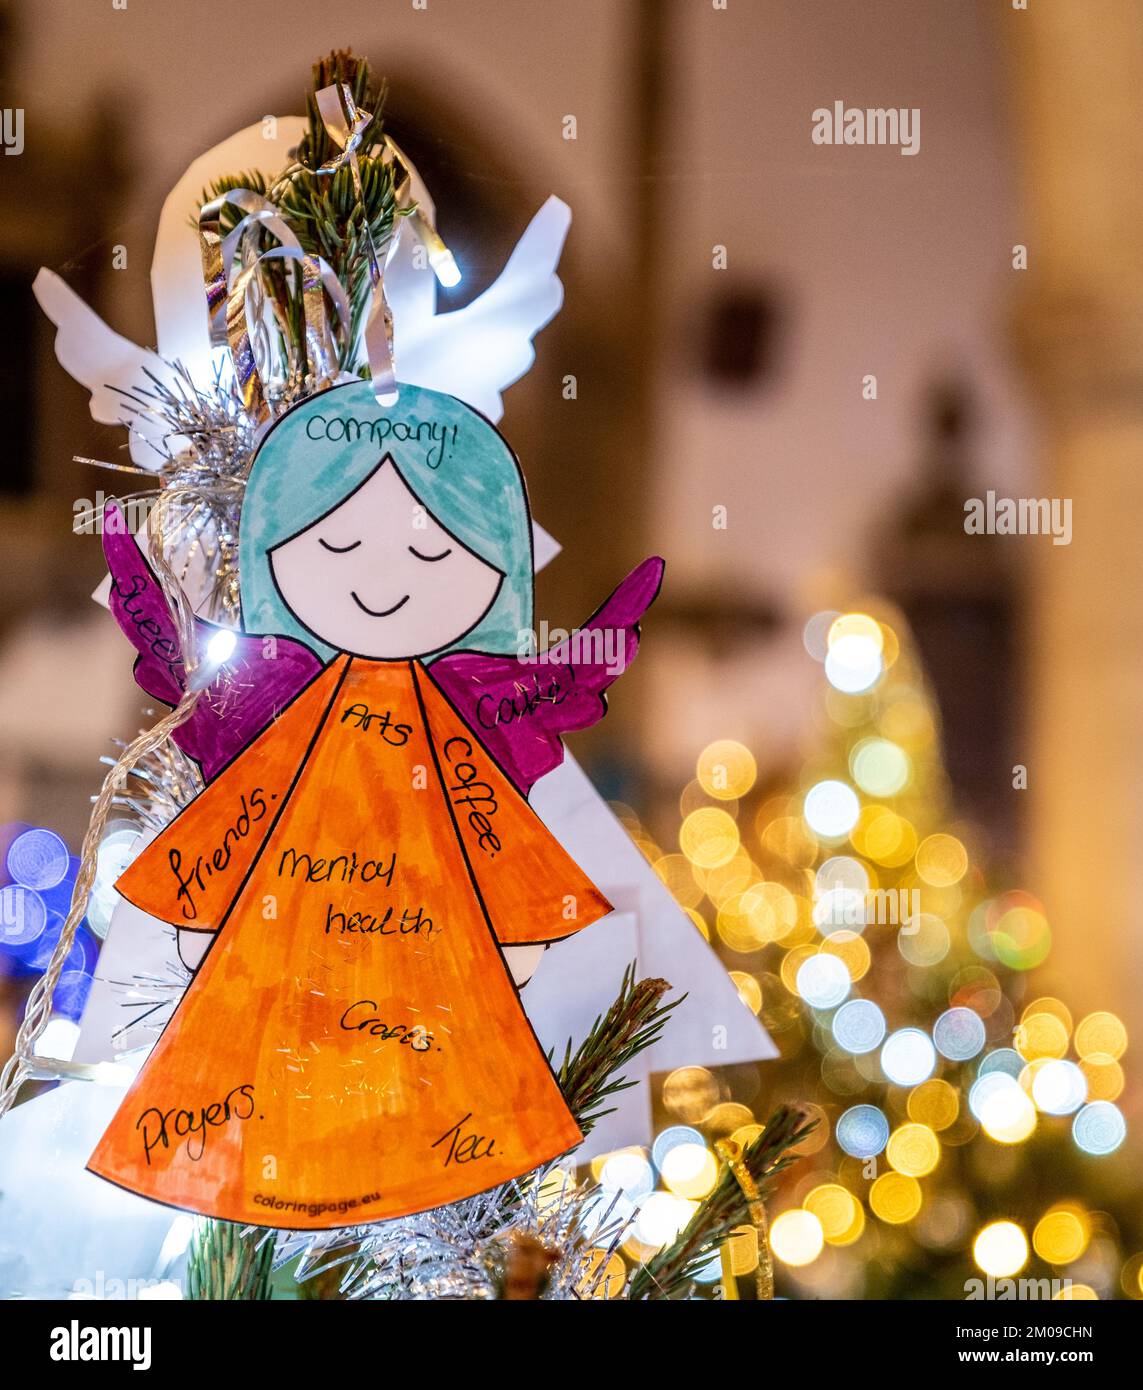 Cimatrice dell'albero di Natale ( angeli e stelle di Natale ) al festival annuale dell'albero di Natale che si tiene presso la St Edberg's Church, Bicester, Oxfordshire. Foto Stock